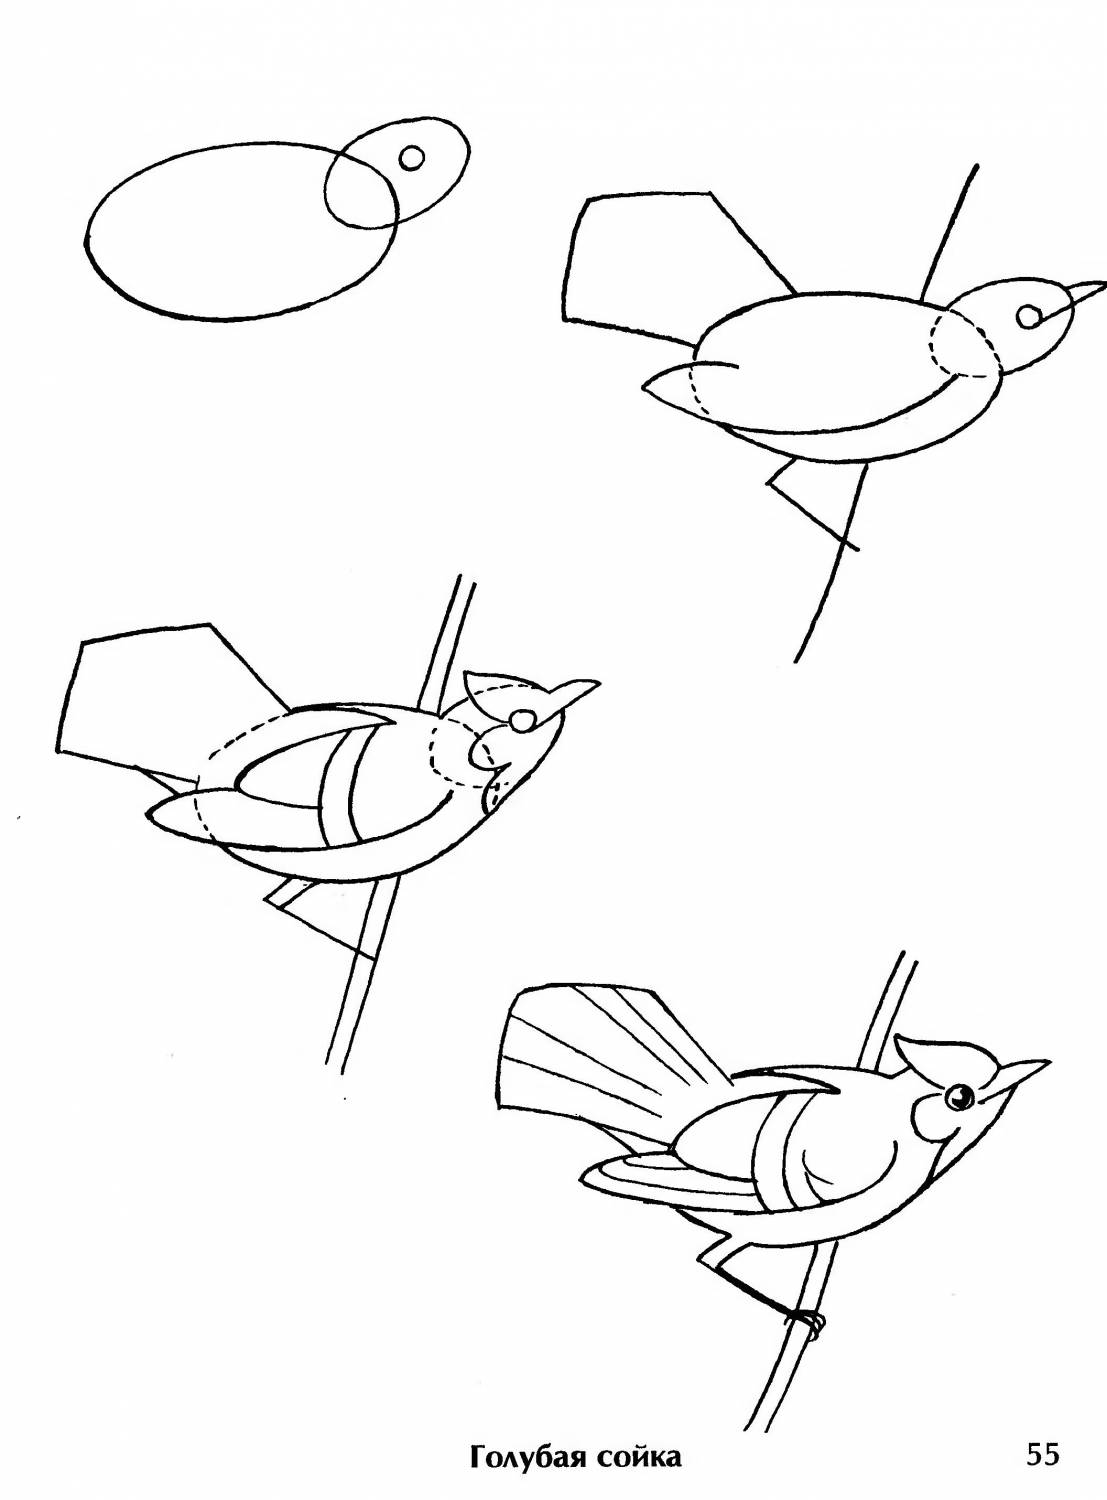  раскраски на тему рисуем птиц                раскраски на тему рисуем птиц для мальчиков и девочек. Познавательные раскраски с поэтапным рисованием птиц. Раскраски для детей     